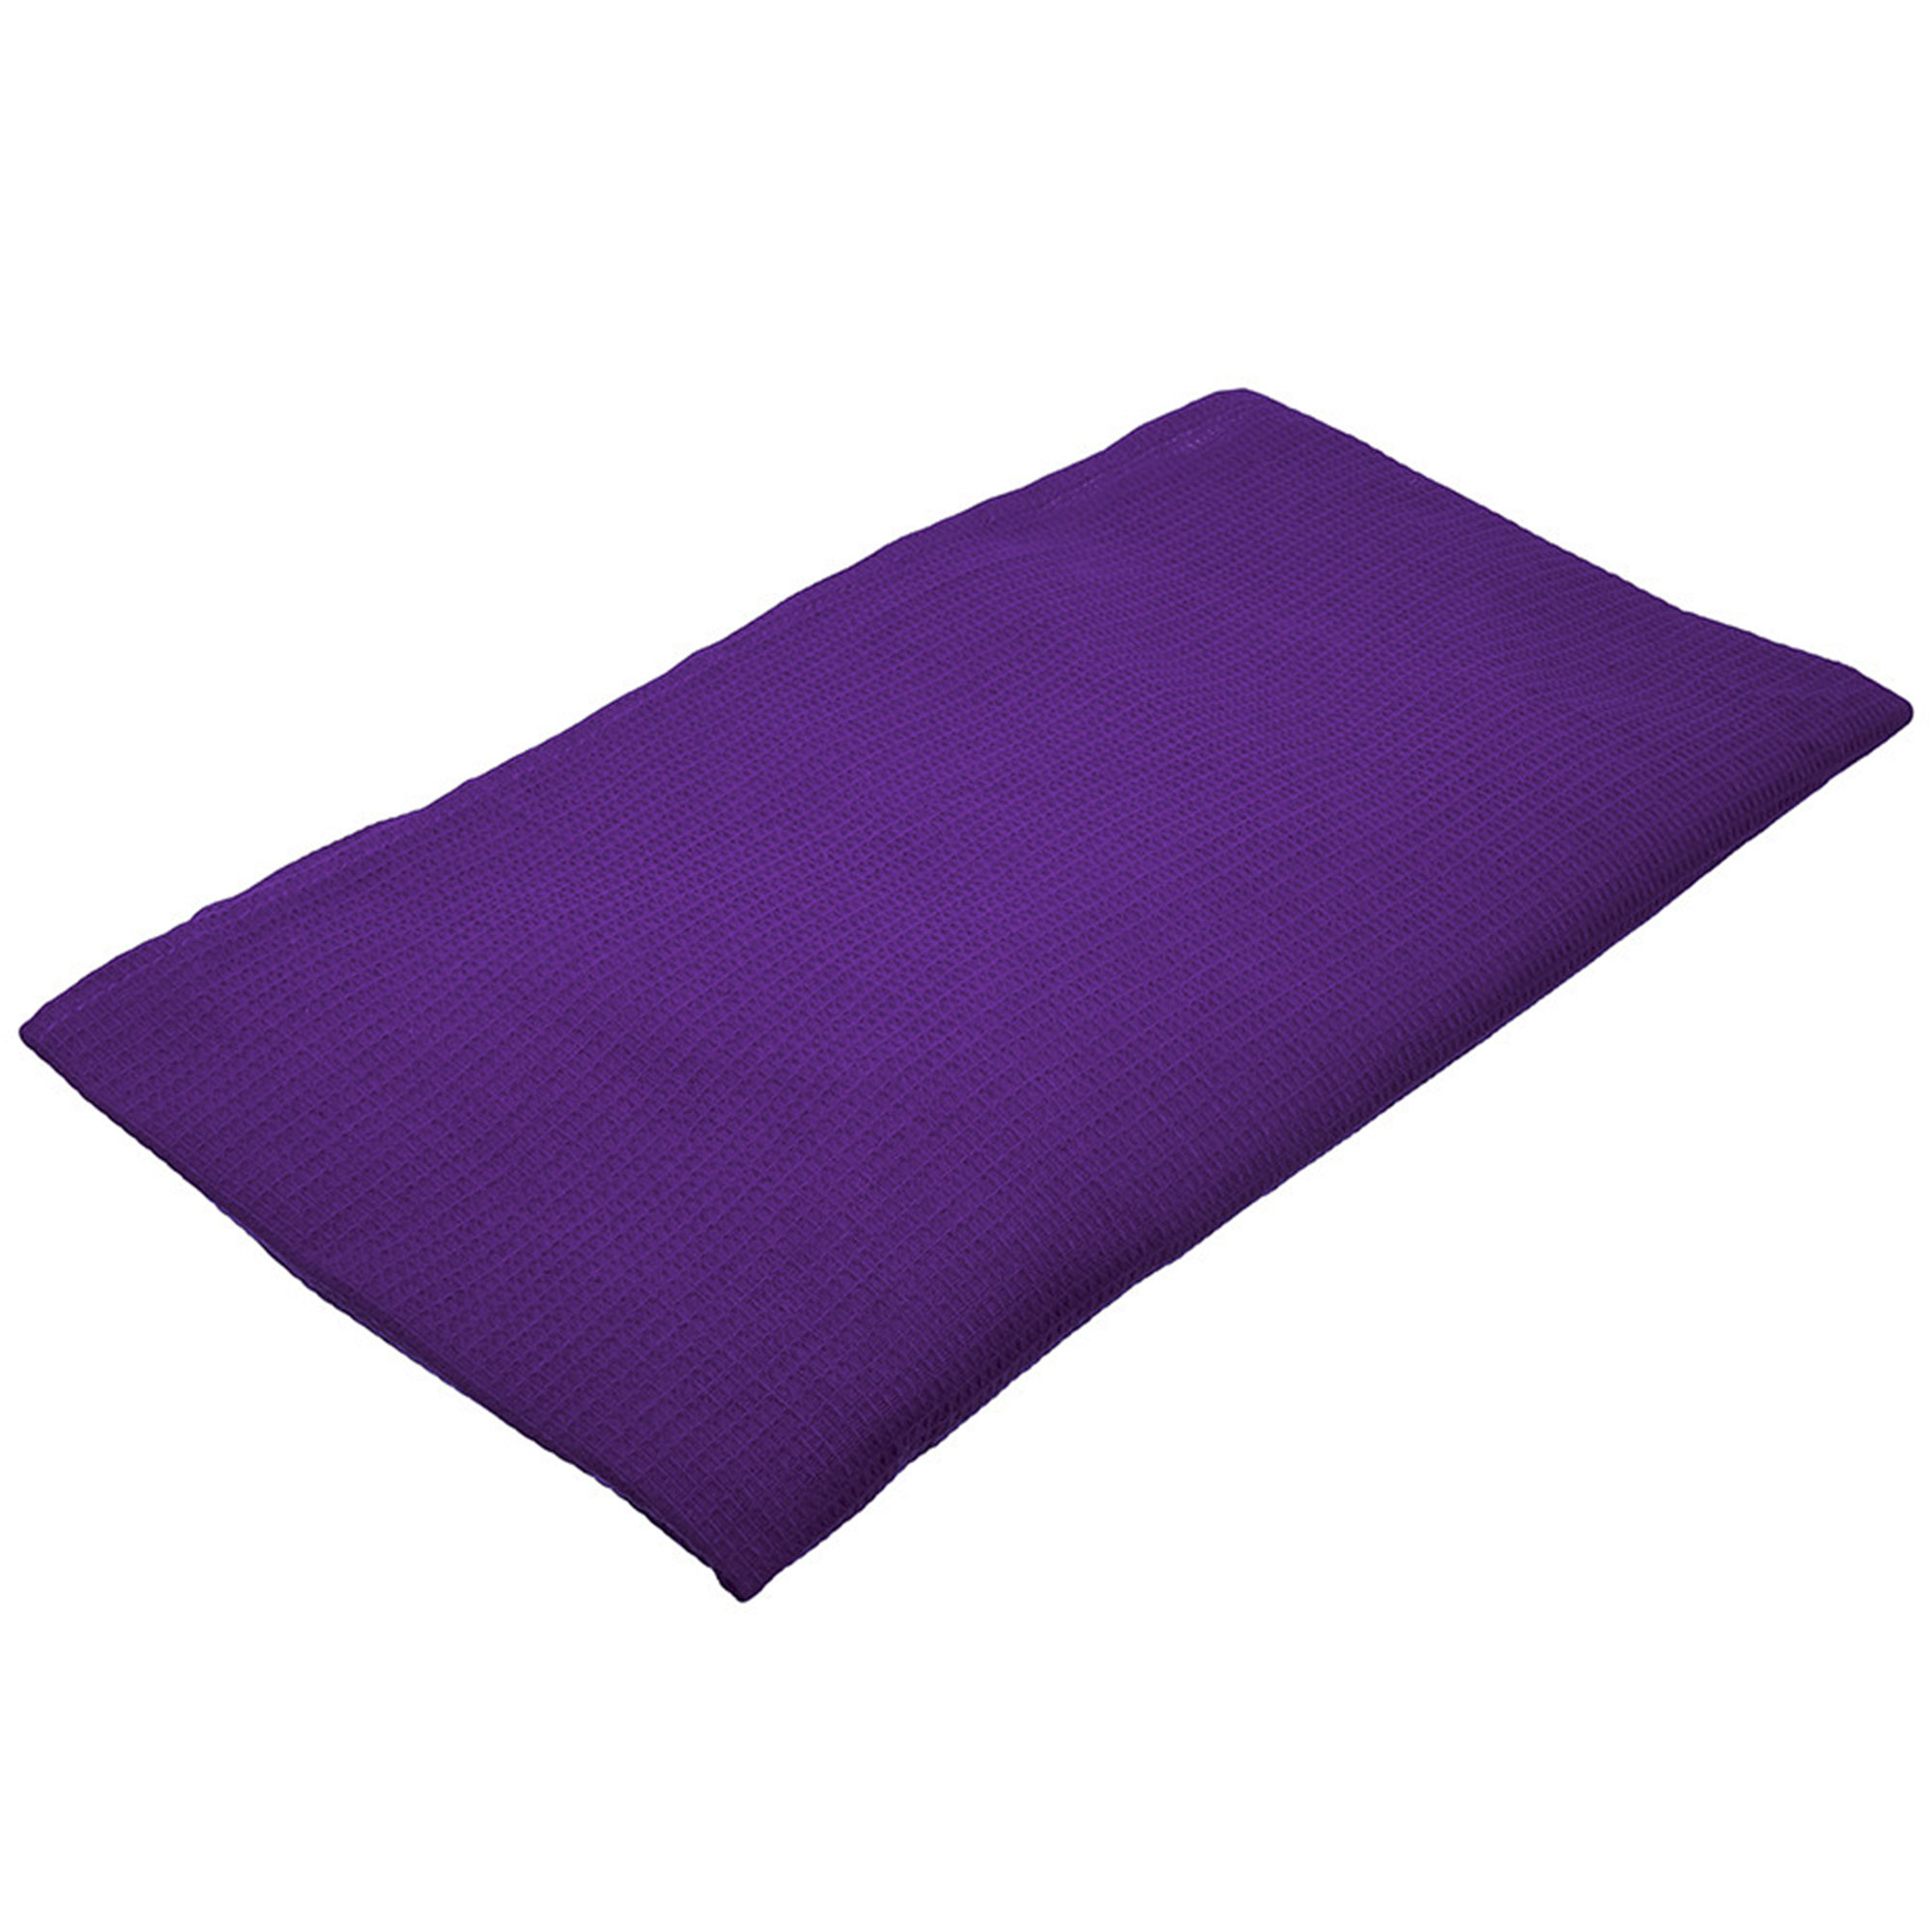 Вафельная накидка для женщин Банные штучки 145x78 см фиолетовая, цвет фиолетовый - фото 2